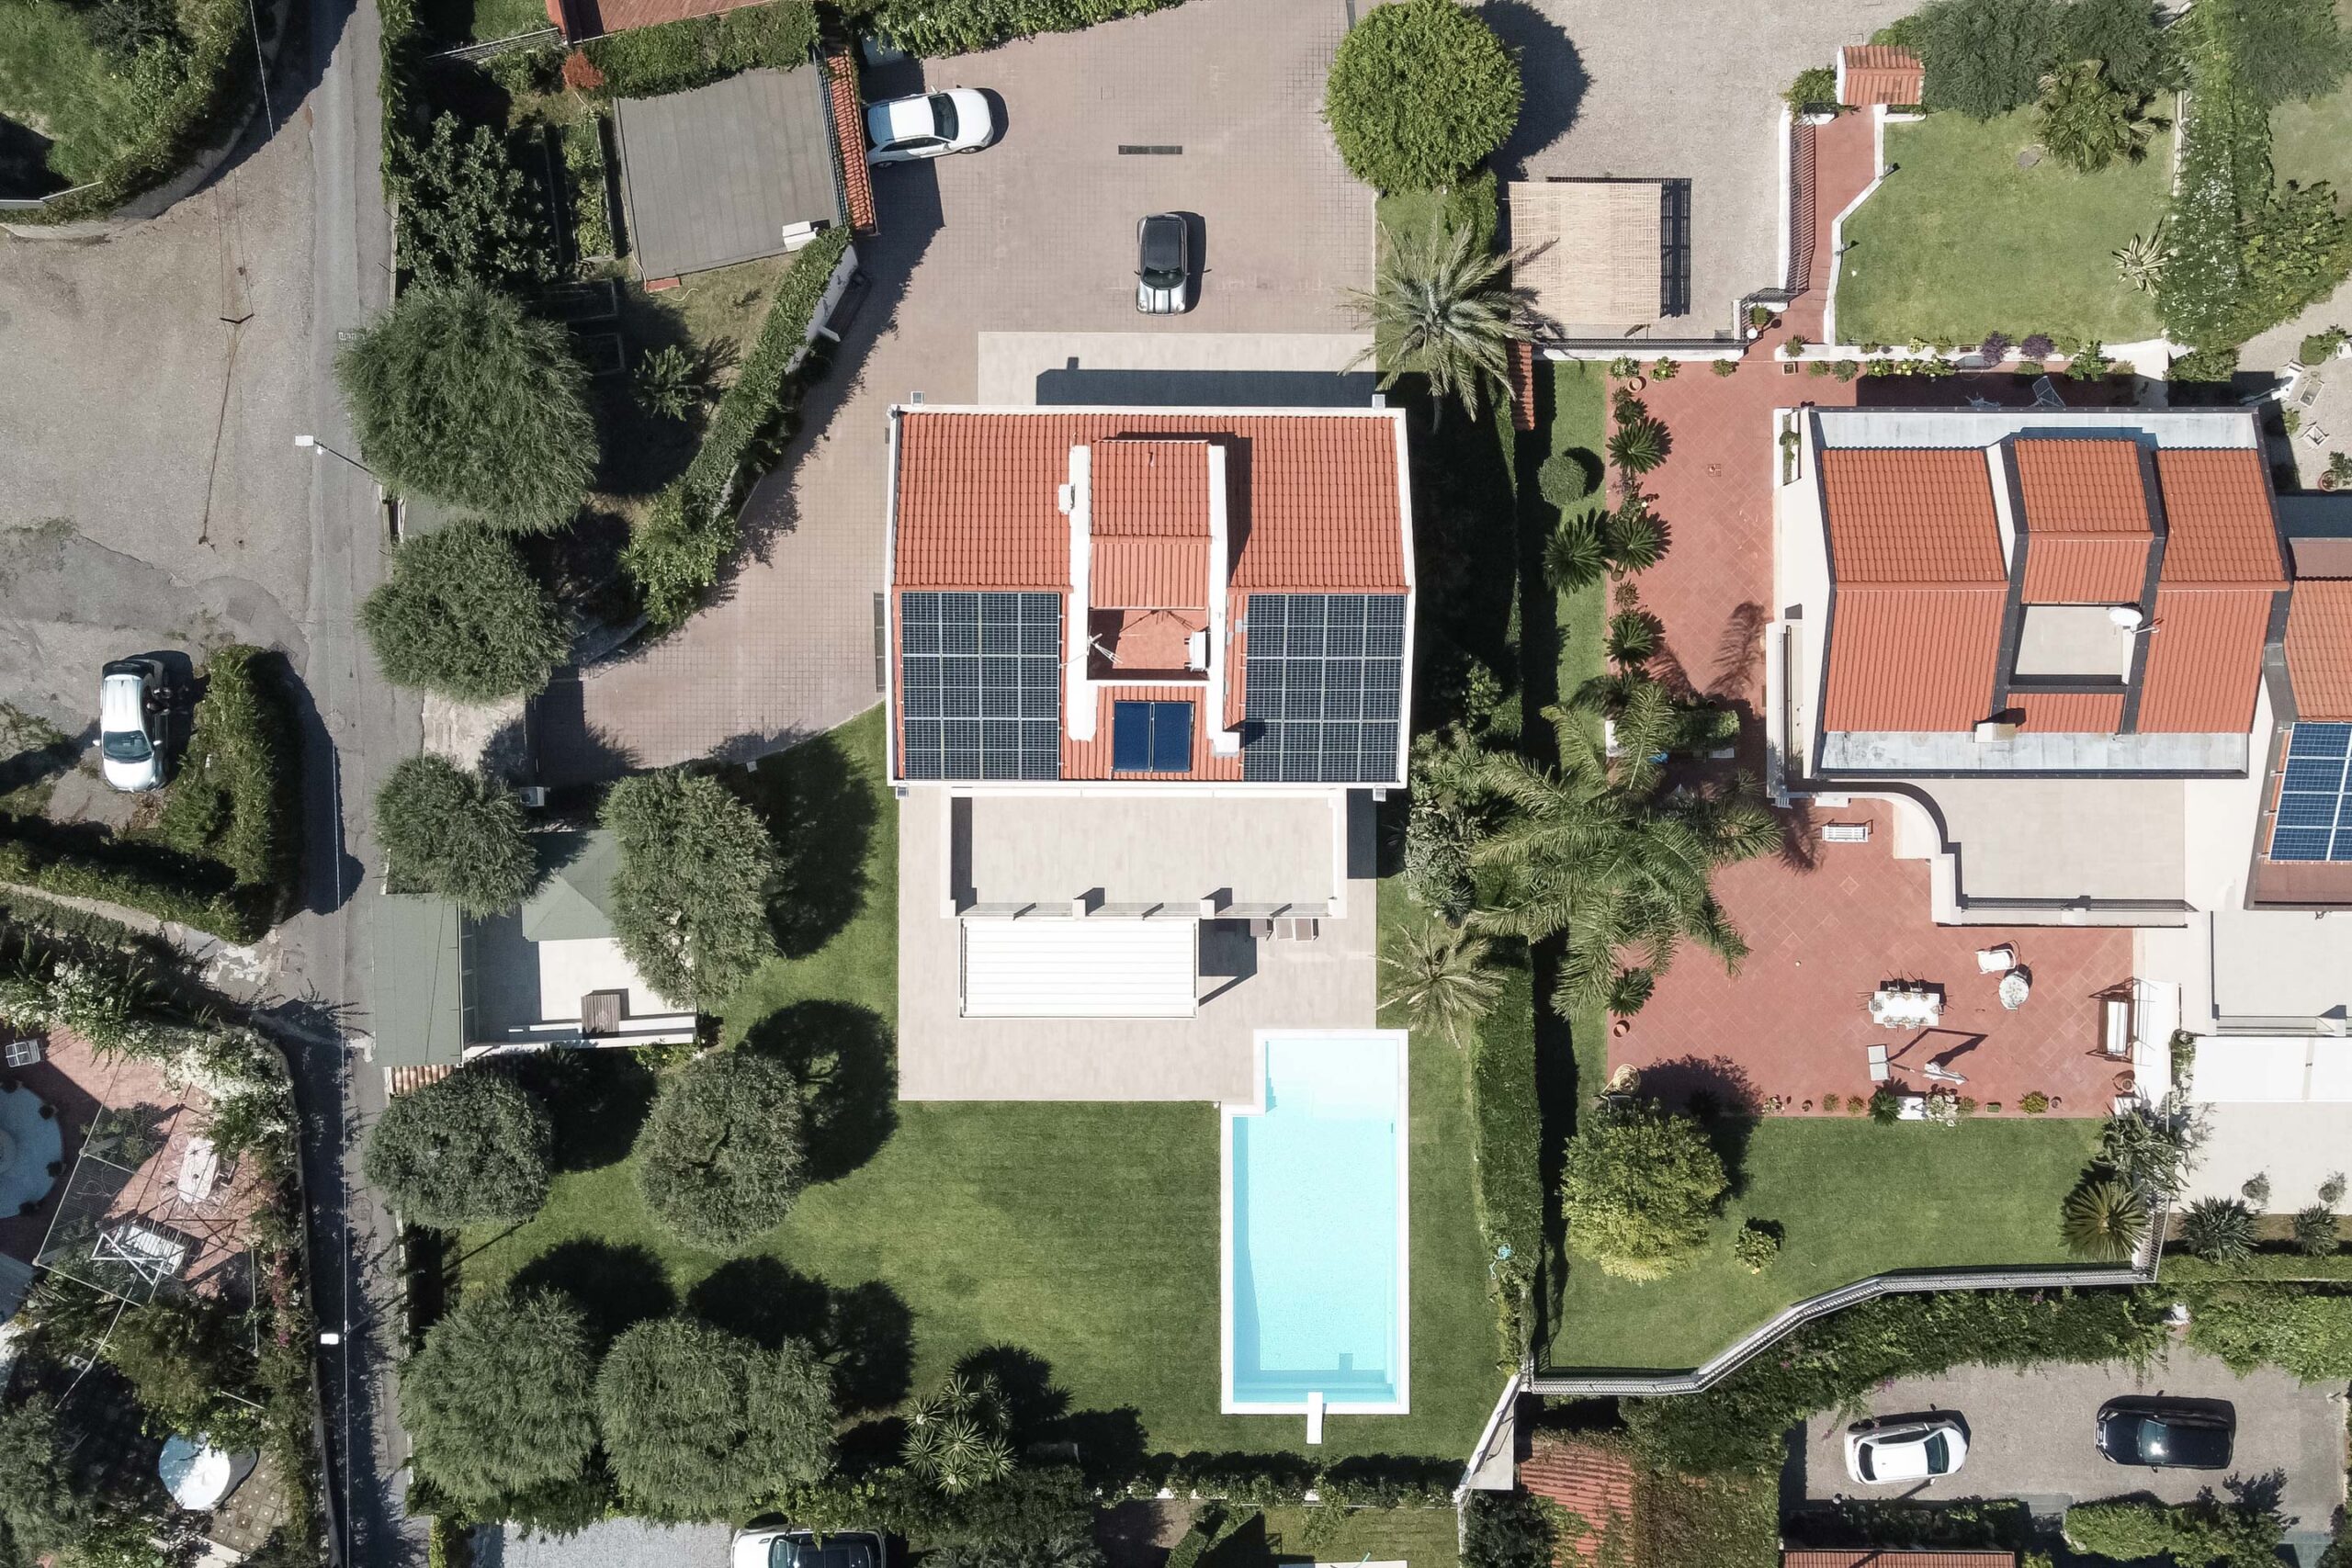 casa con pannelli fotovoltaici, tenda e piscina nel giardino